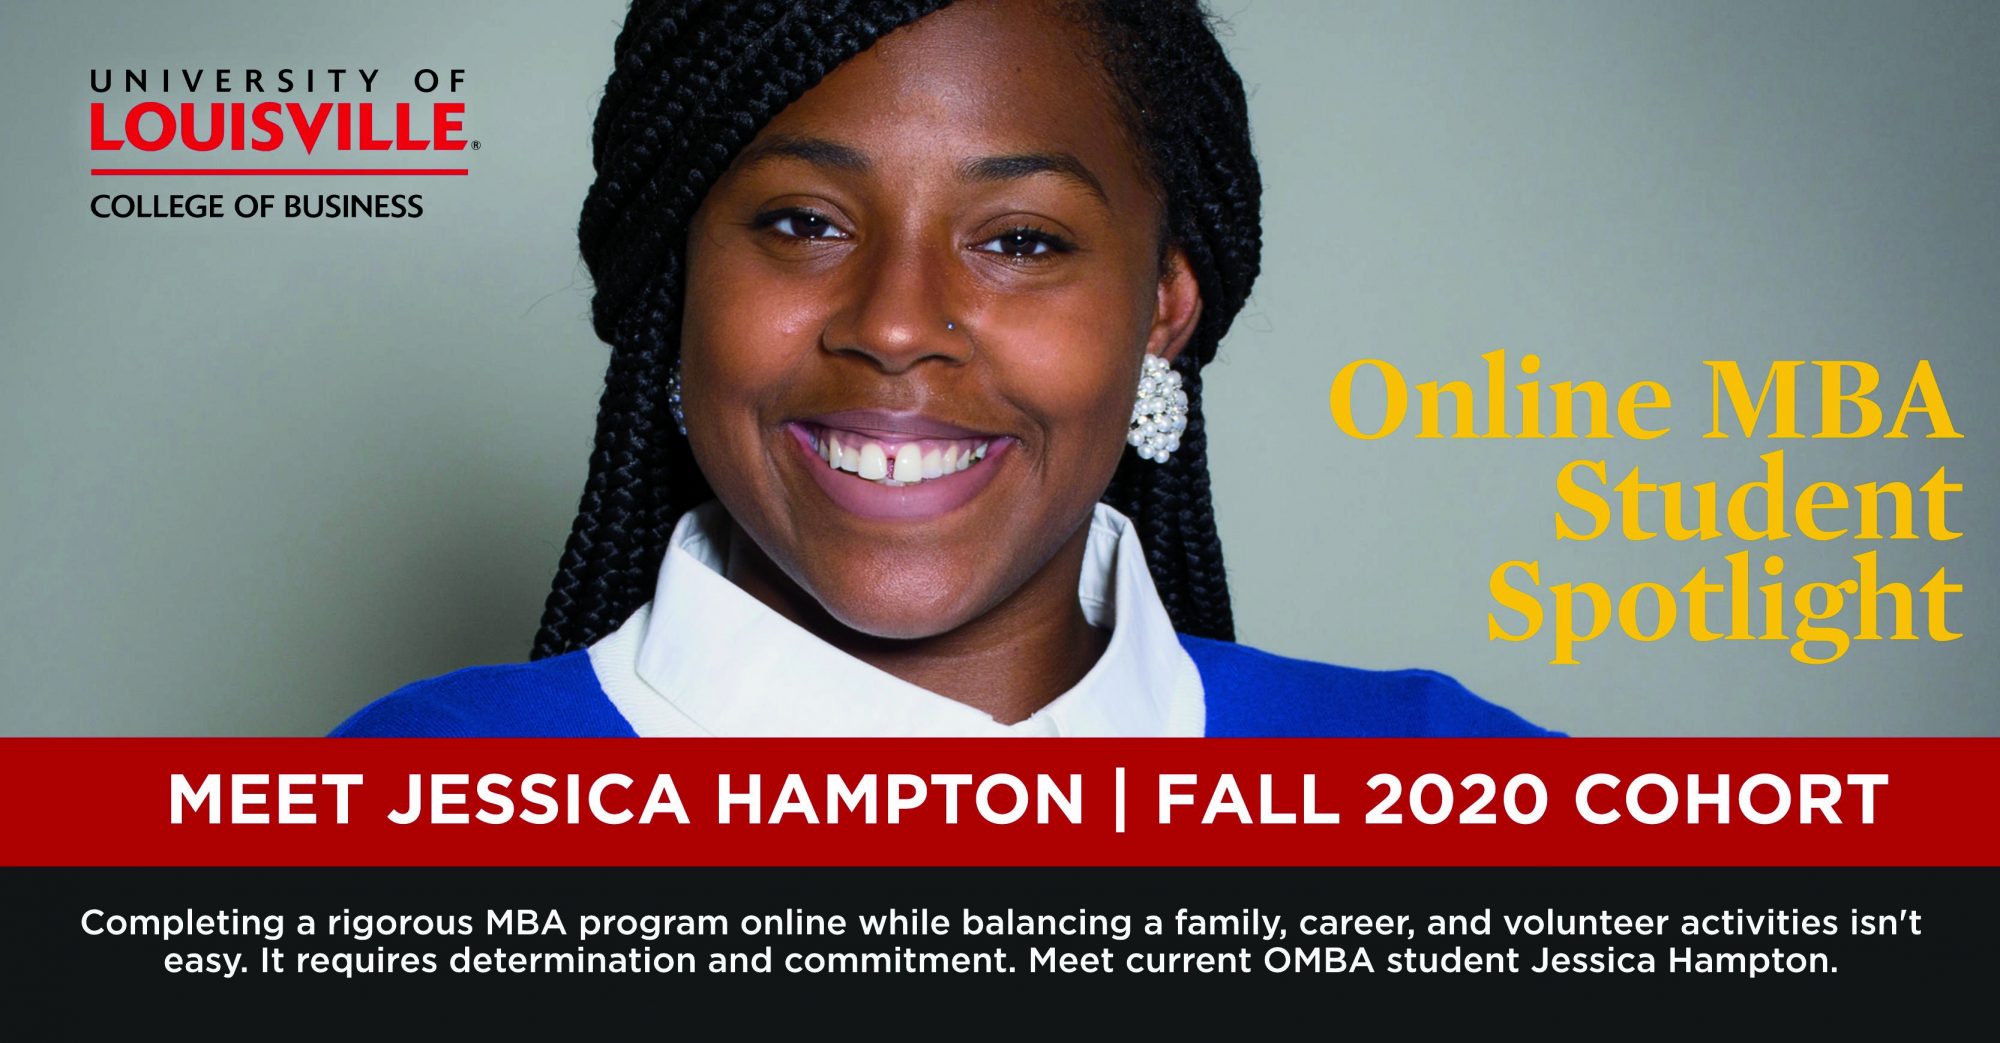 В центре внимания студентов OMBA: Джессика Хэмптон